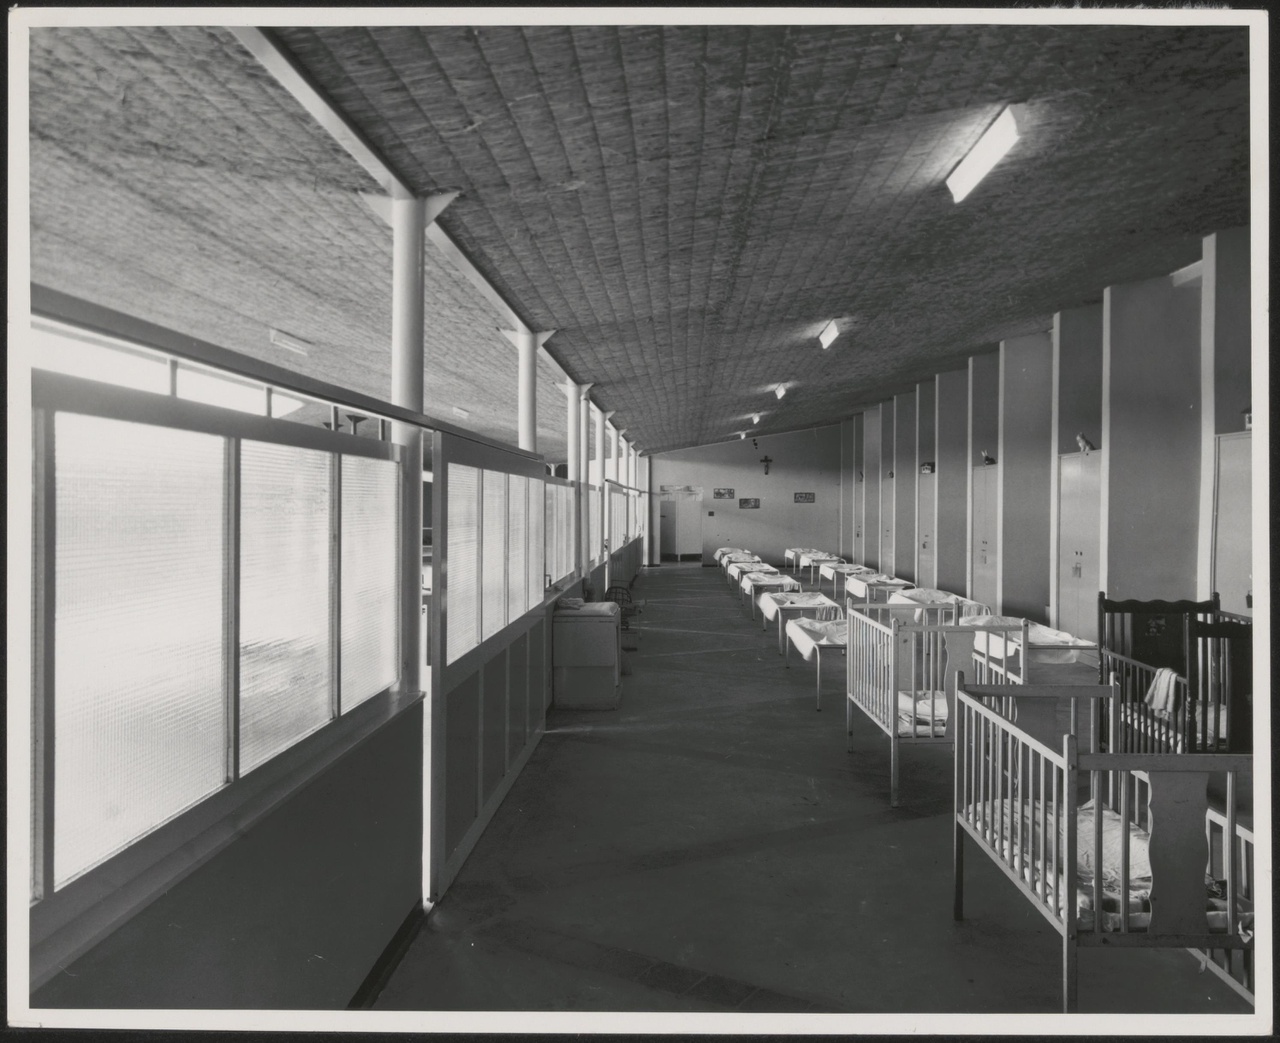 Afbeelding van Mgr. Verriet Instituut, ca.1952, interieur kinderslaapzaal